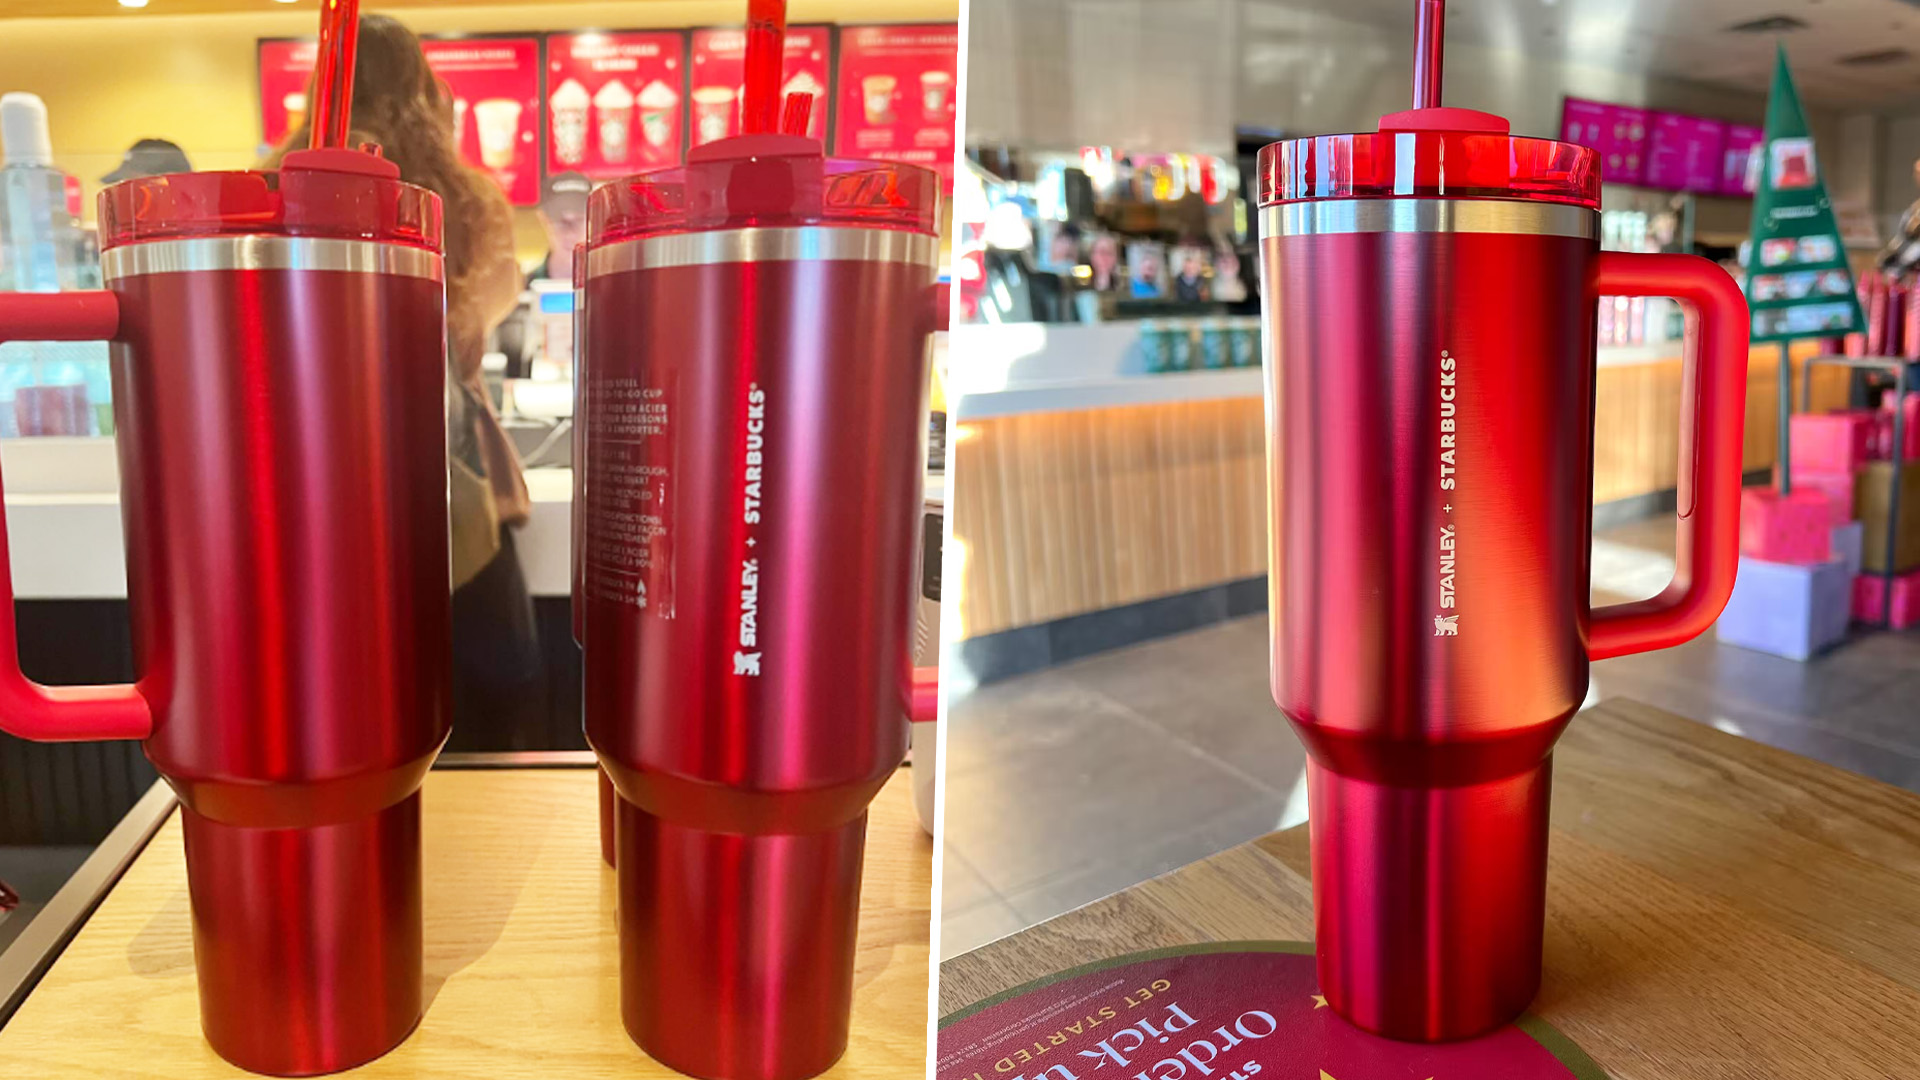 Cómo puedes obtener GRATIS un vaso navideño coleccionable de Starbucks -  Infobae